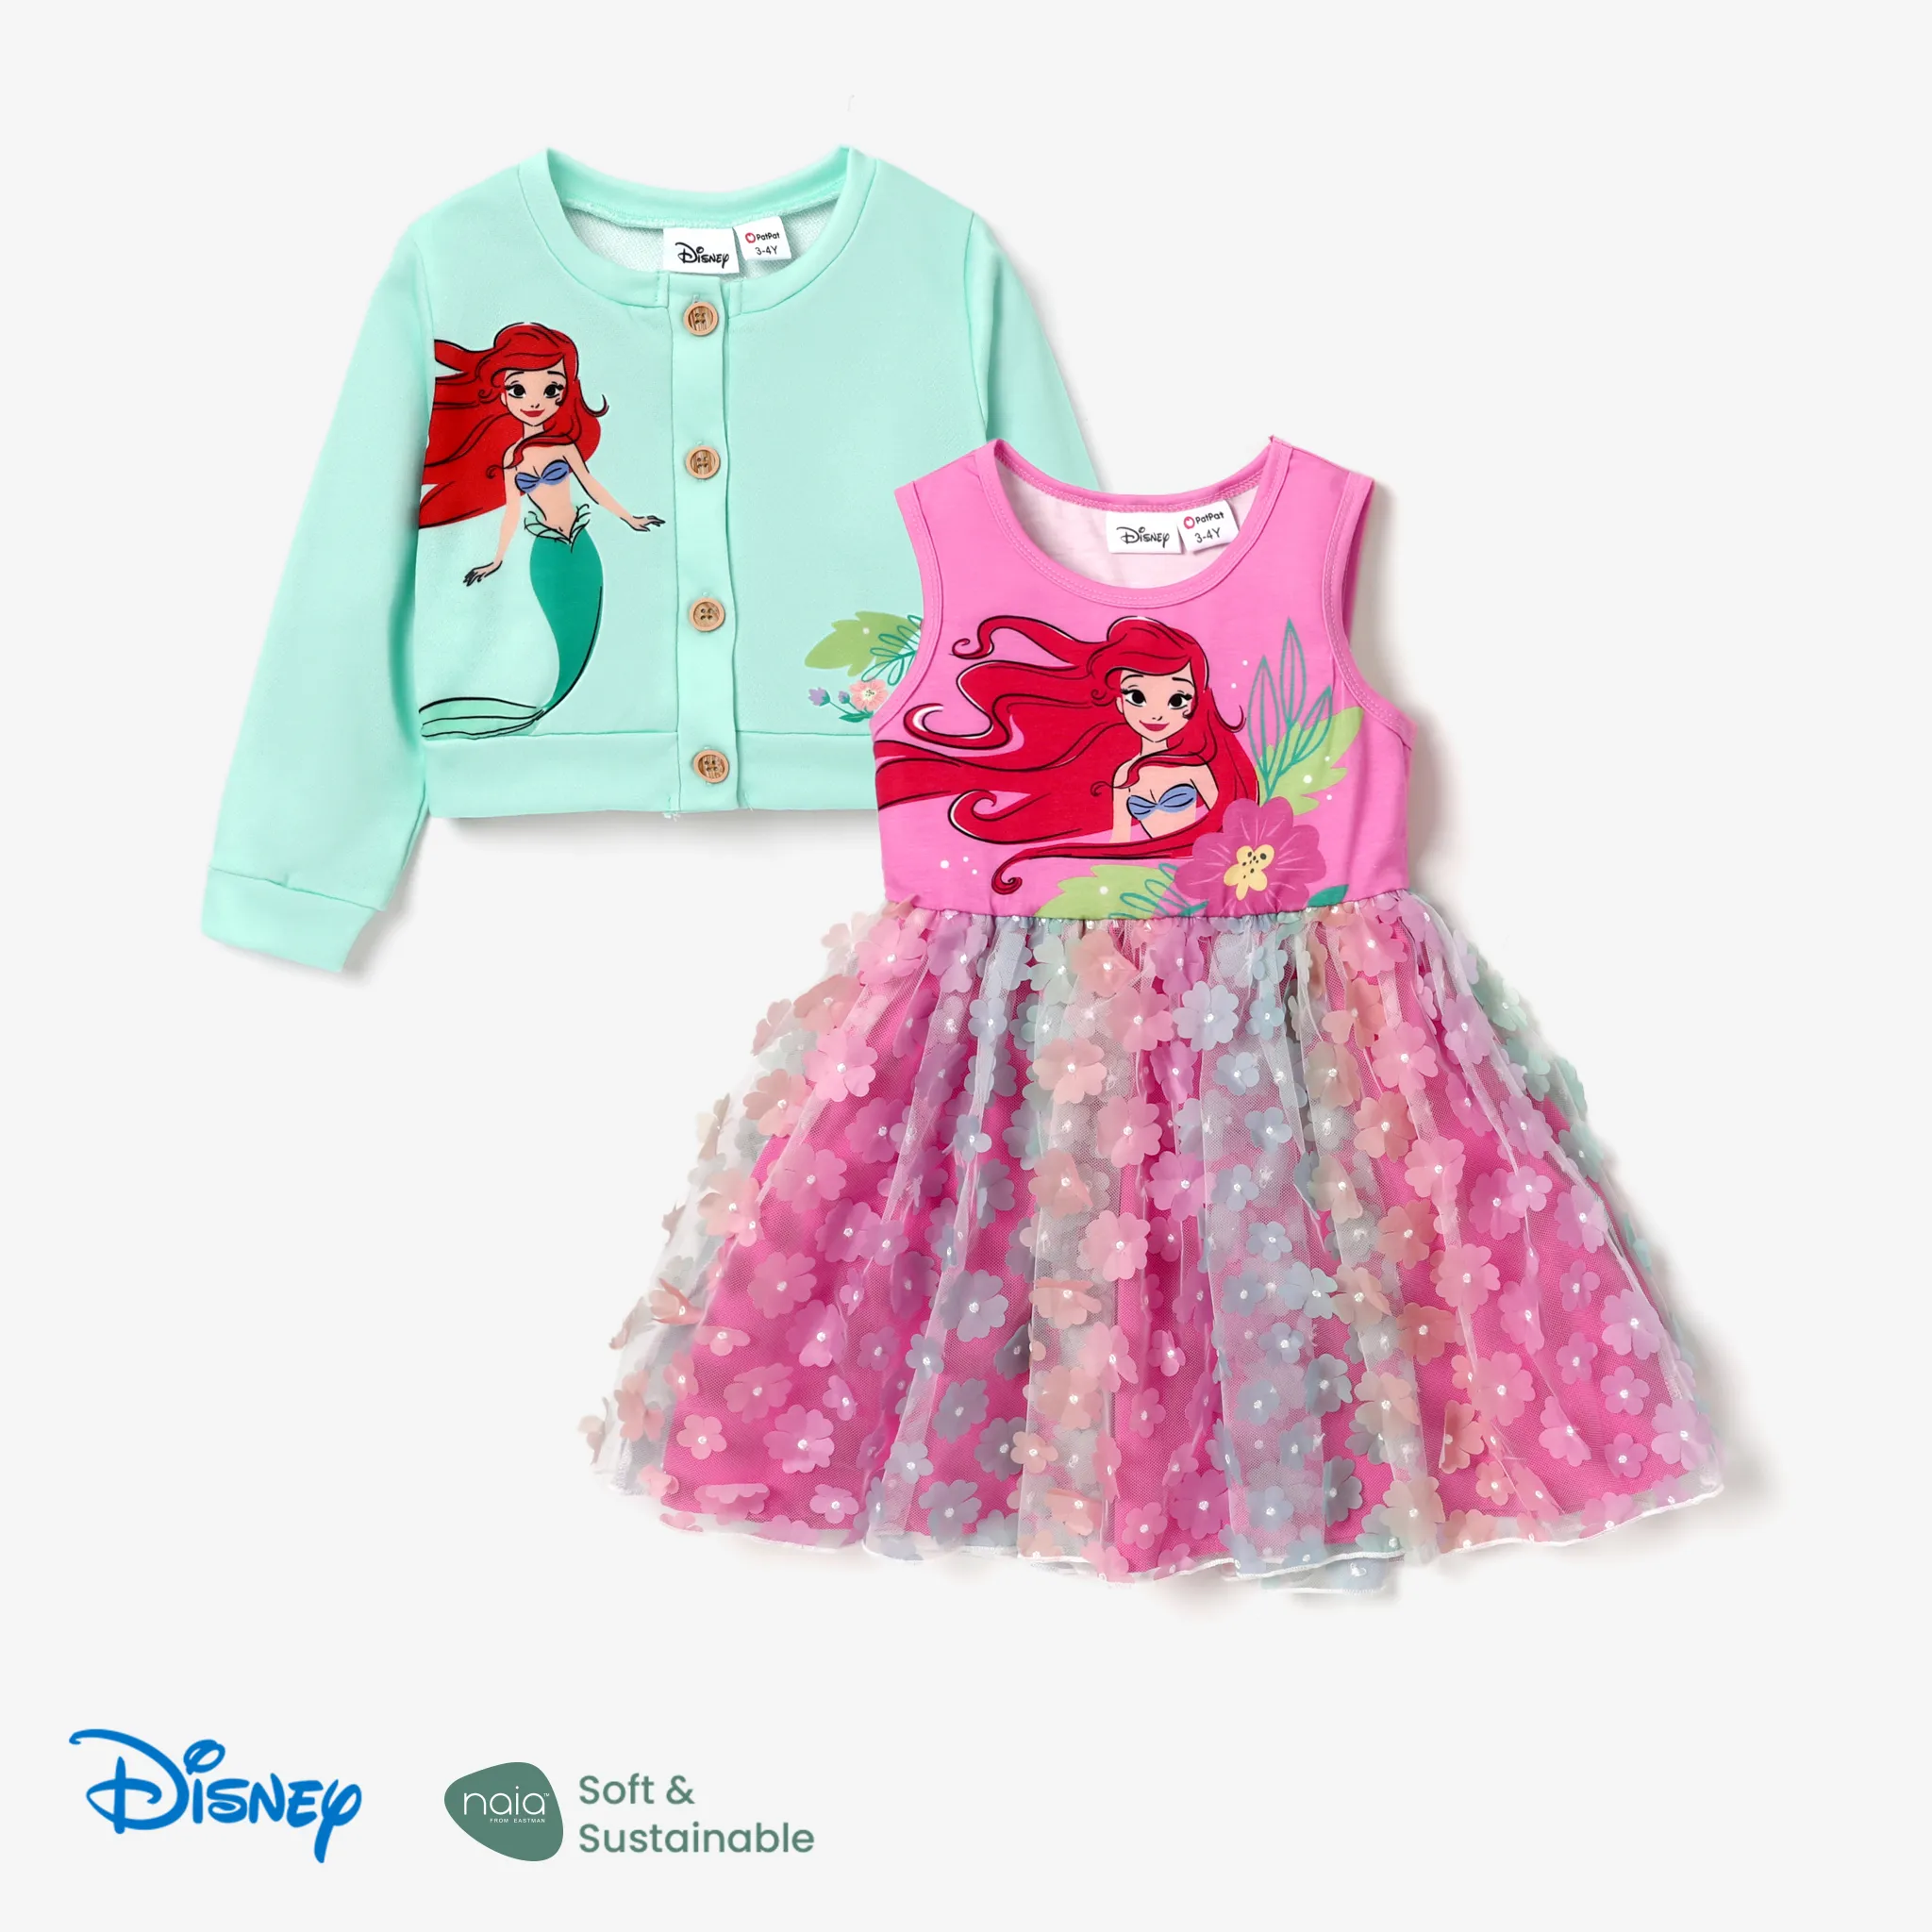 Disney Princess Toddler Girl 2pcs Character Naiaâ¢ Print Tank Dress And Long-sleeve Cardigan Set